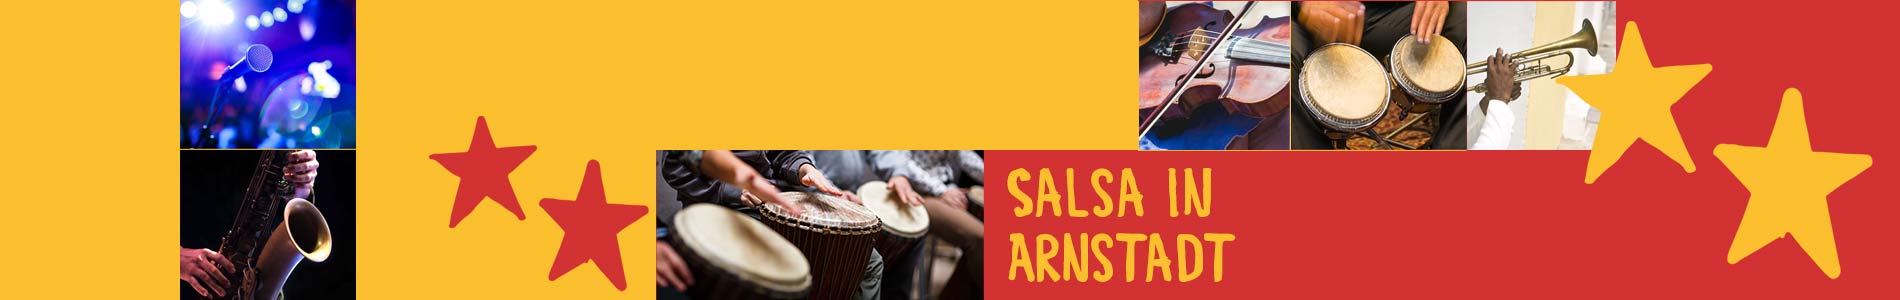 Salsa in Arnstadt – Salsa lernen und tanzen, Tanzkurse, Partys, Veranstaltungen